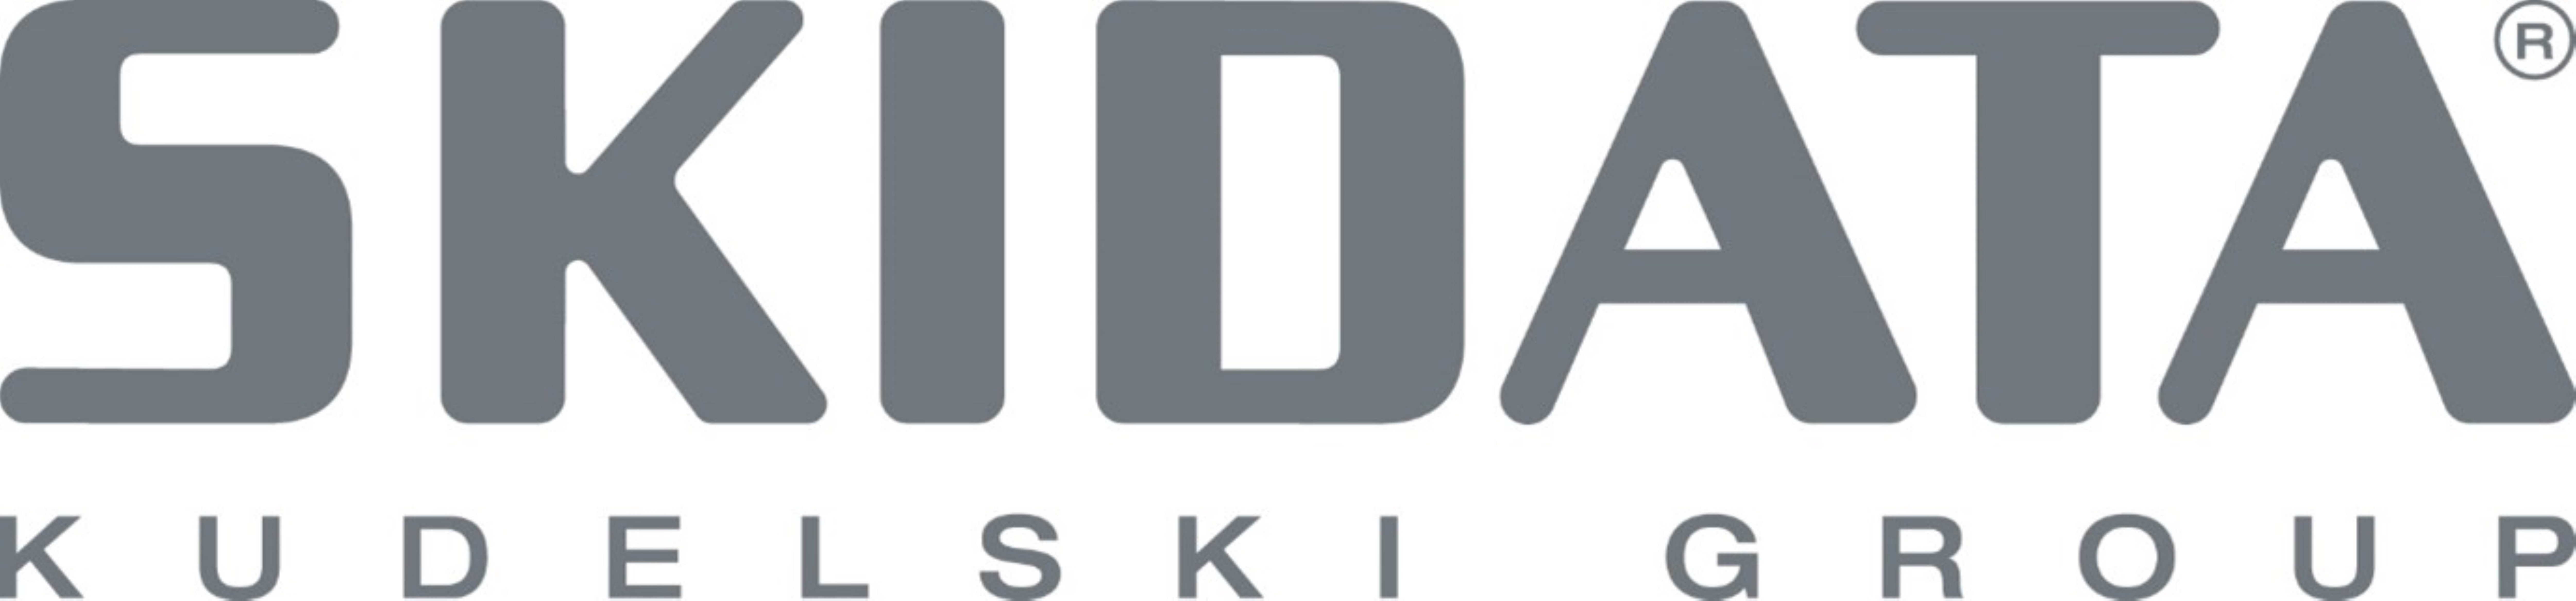 SKIDATA logo